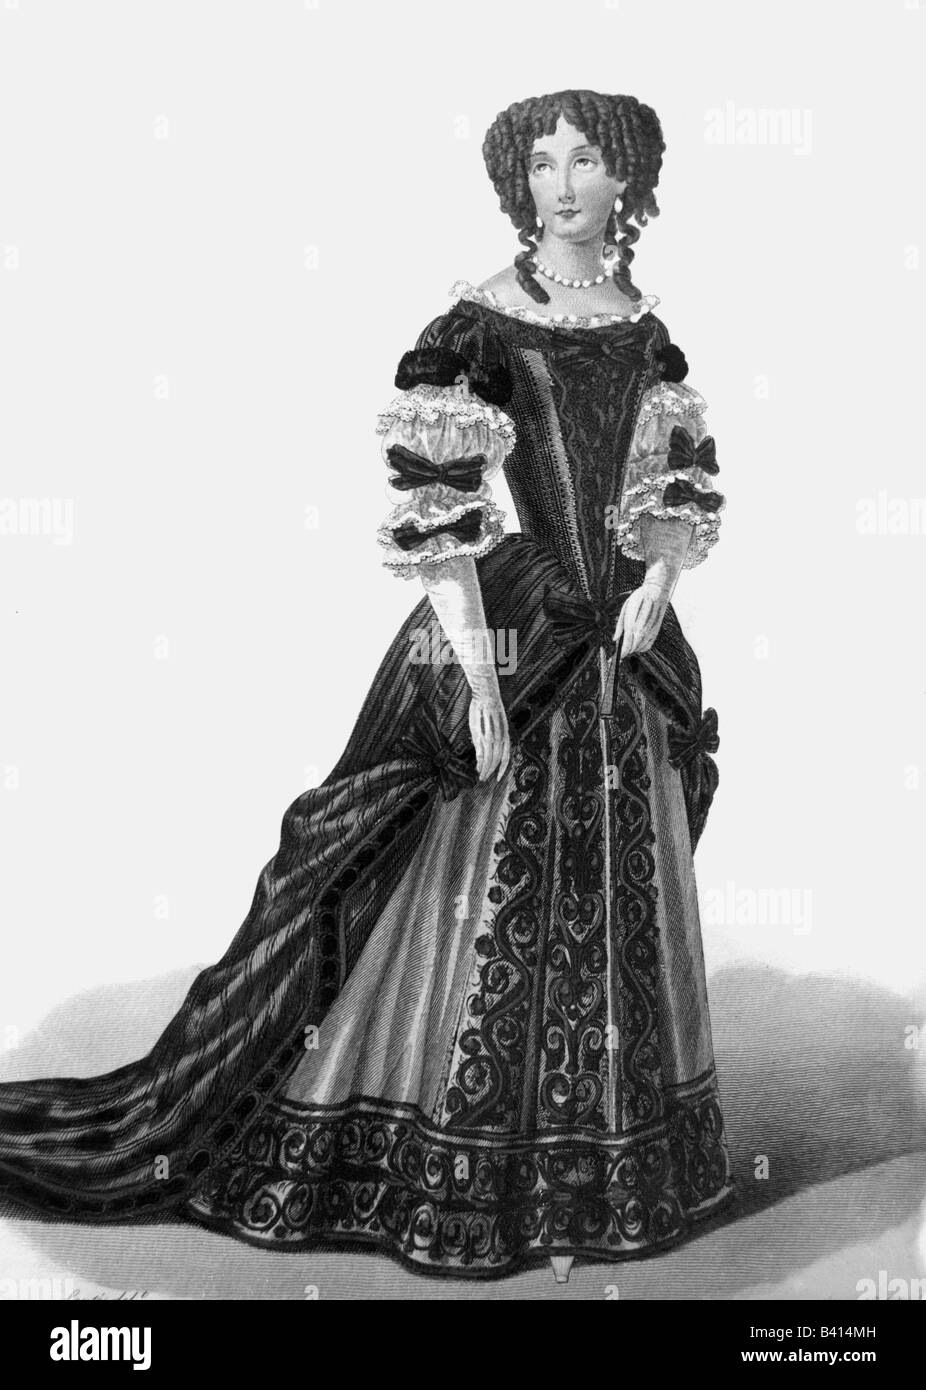 https://c8.alamy.com/comp/B414MH/fashion-17th-century-ladies-fashion-engraving-by-la-valliere-dress-B414MH.jpg